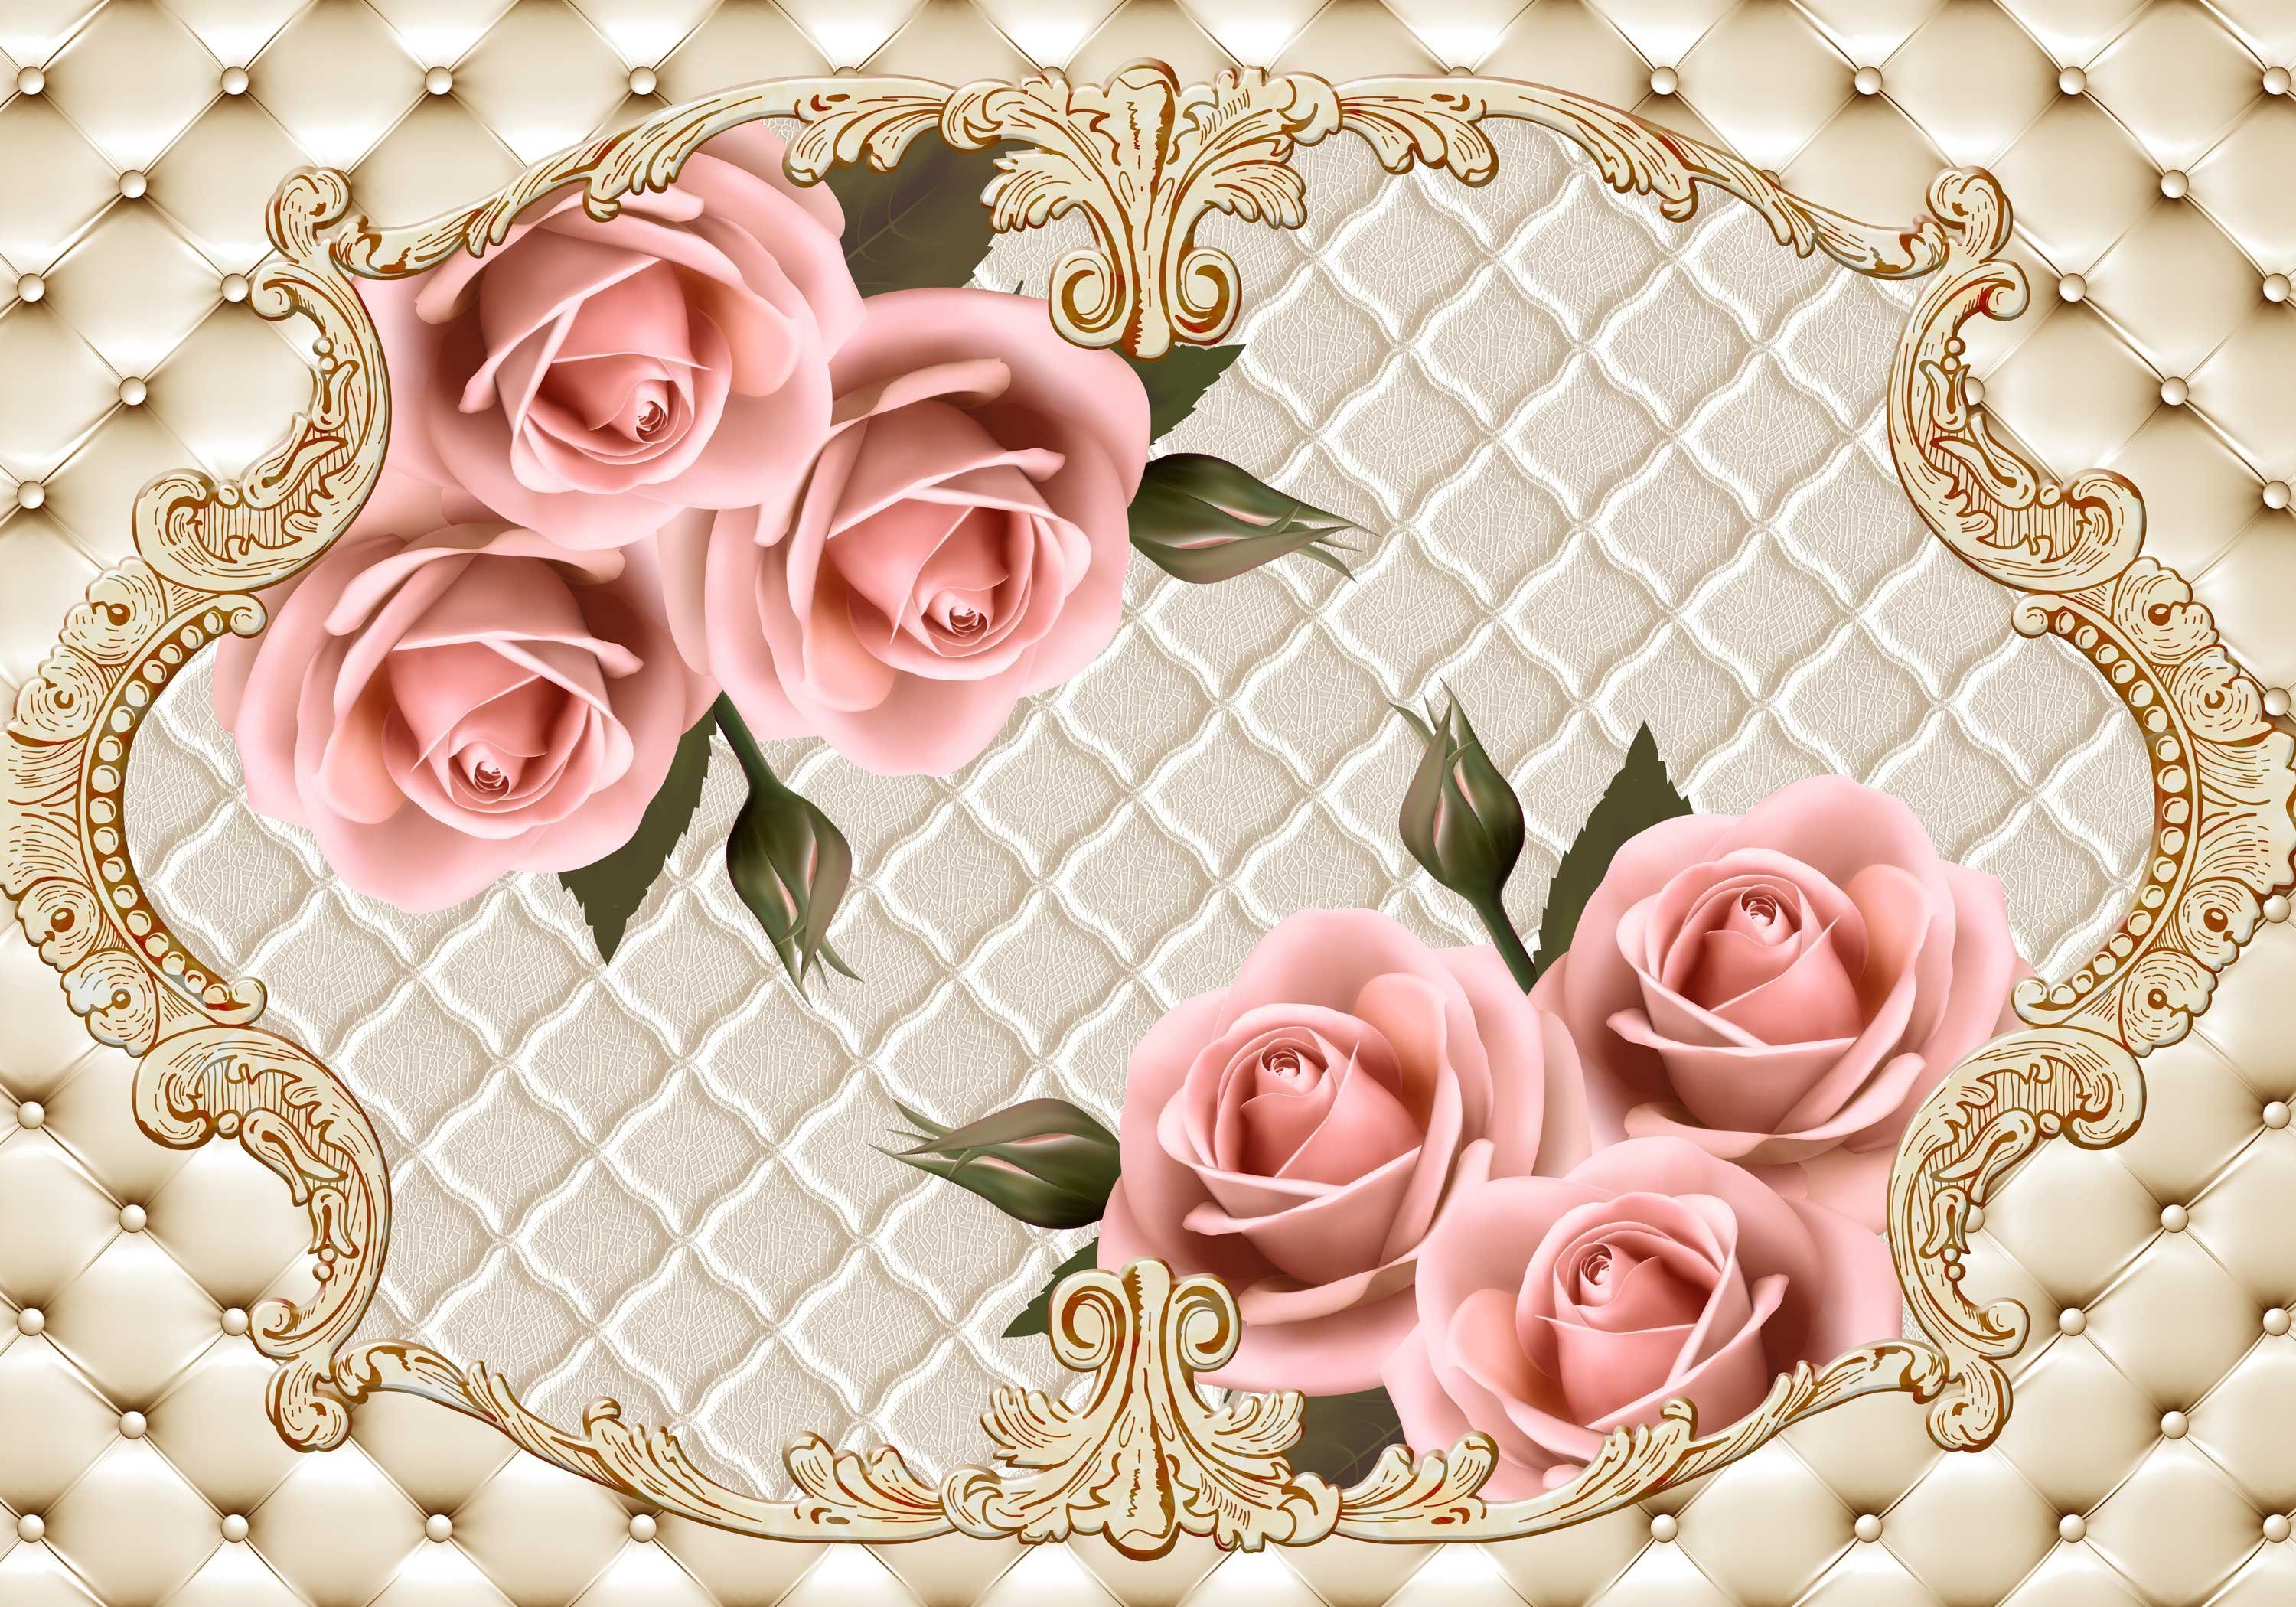 wandmotiv24 Fototapete Rosenblüten Ornamente Leder, glatt, Wandtapete, Motivtapete, matt, Vliestapete